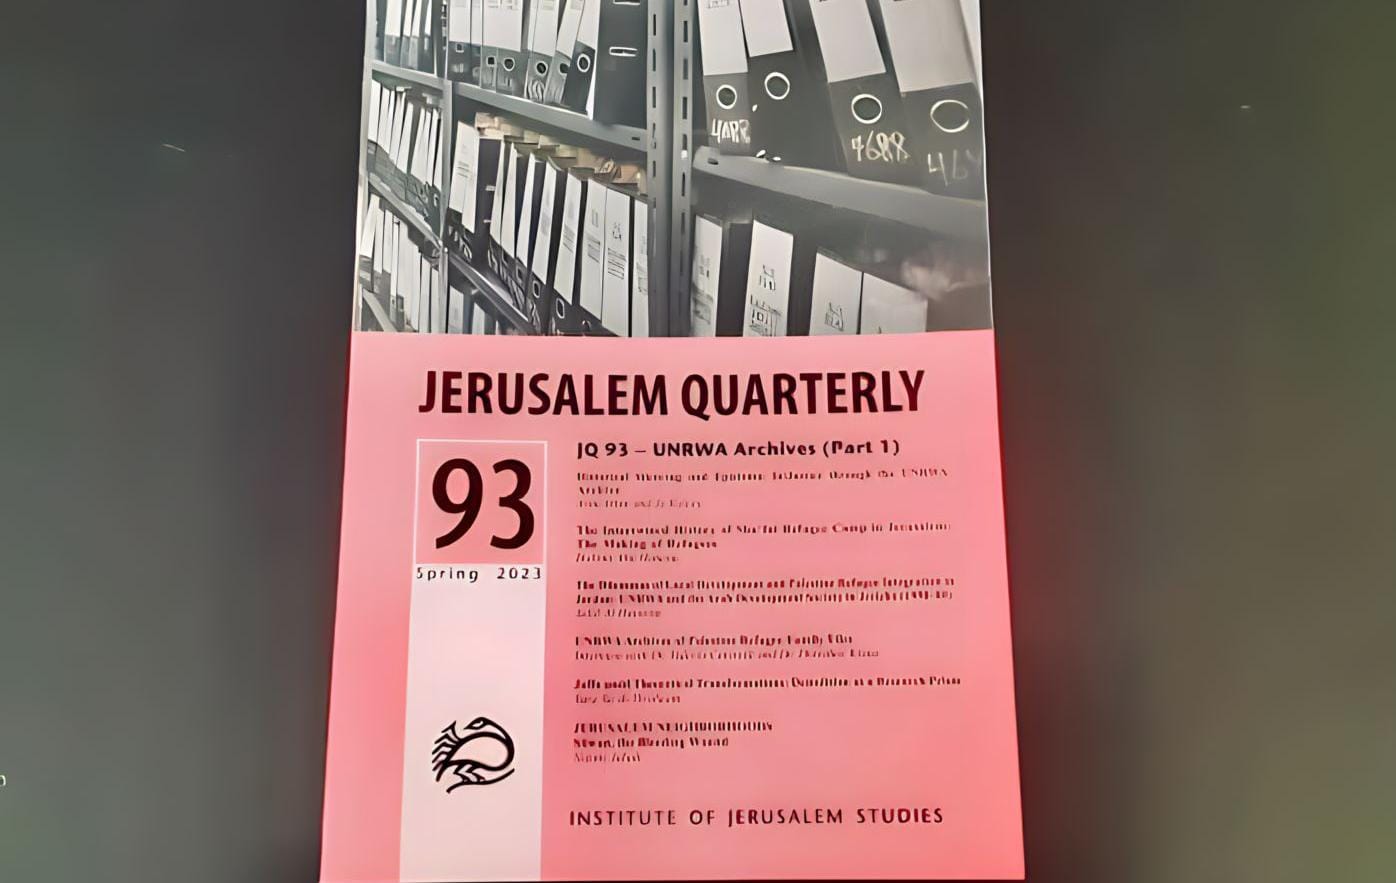 عدد خاص بأرشيفات الأونروا في فصلية القدس

